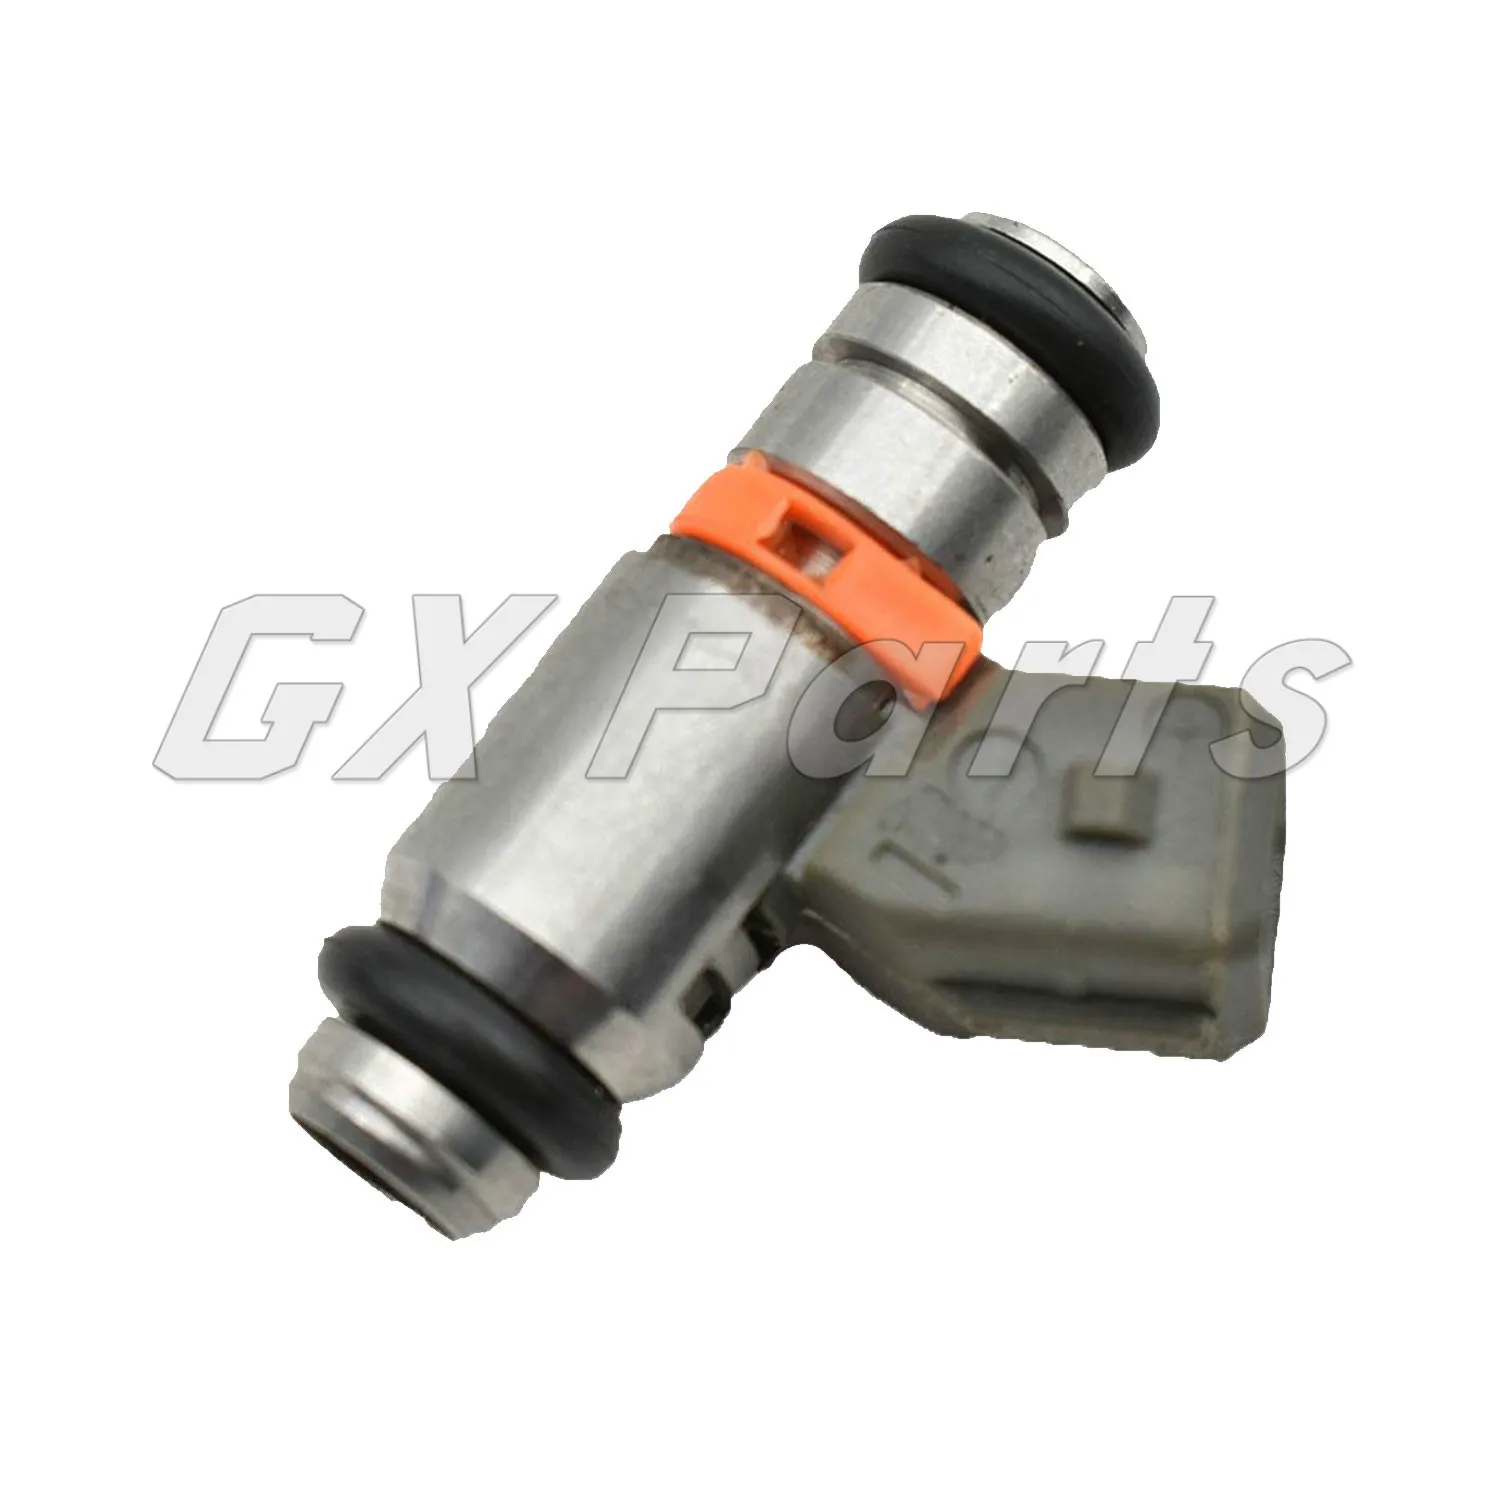 Semoic Automotive Fuel Injector Nozzle for Piaggio Gilleh Vespa PI8732885 GTS250 300 IWP 182 IWP182 